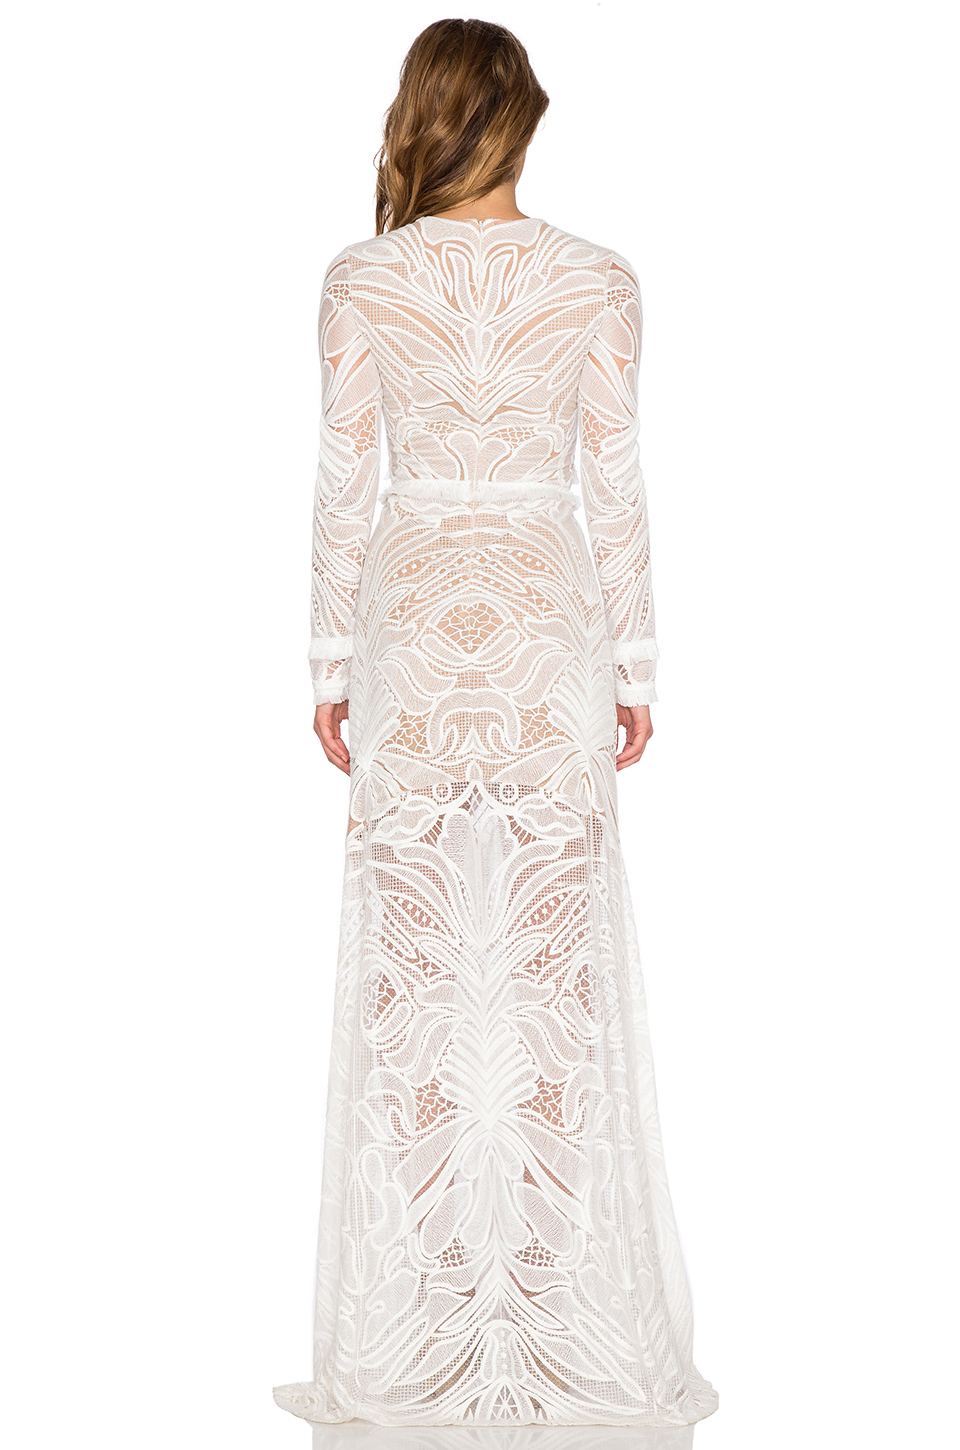 alexis white lace dress Big sale - OFF 74%